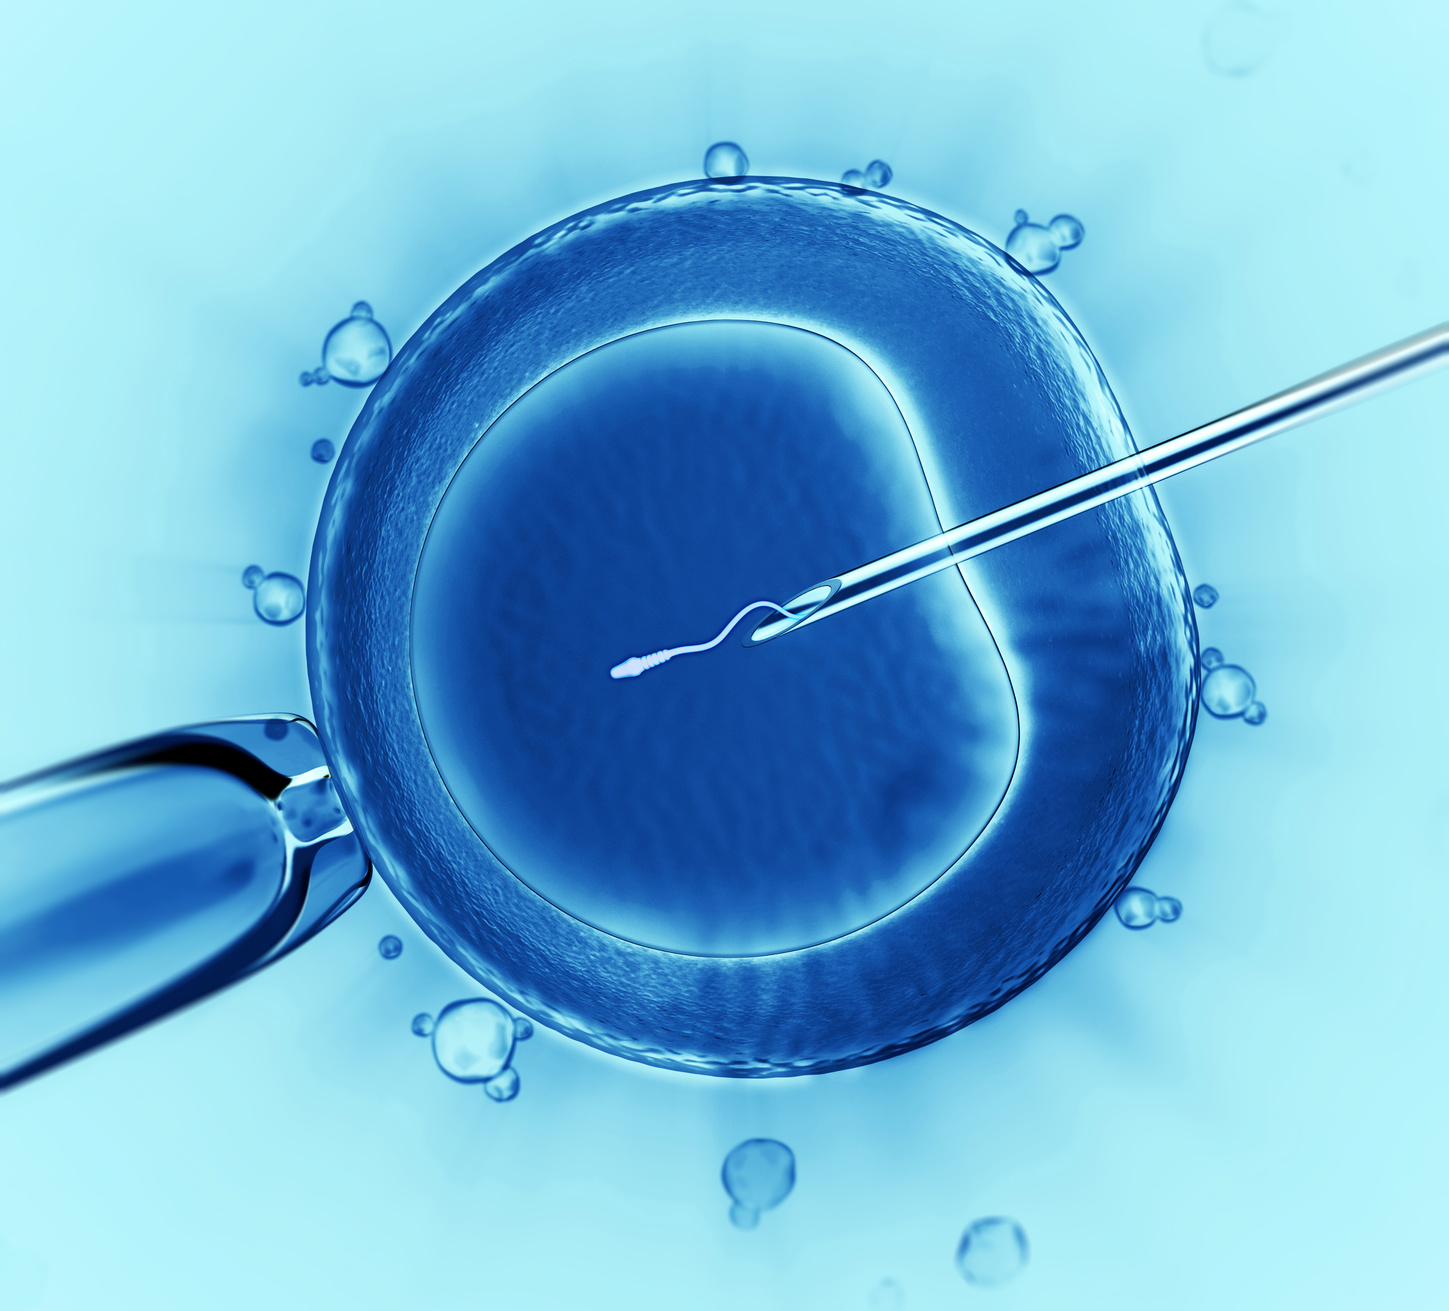 La transferencia de dos embriones ¿Cuáles son los riesgos?